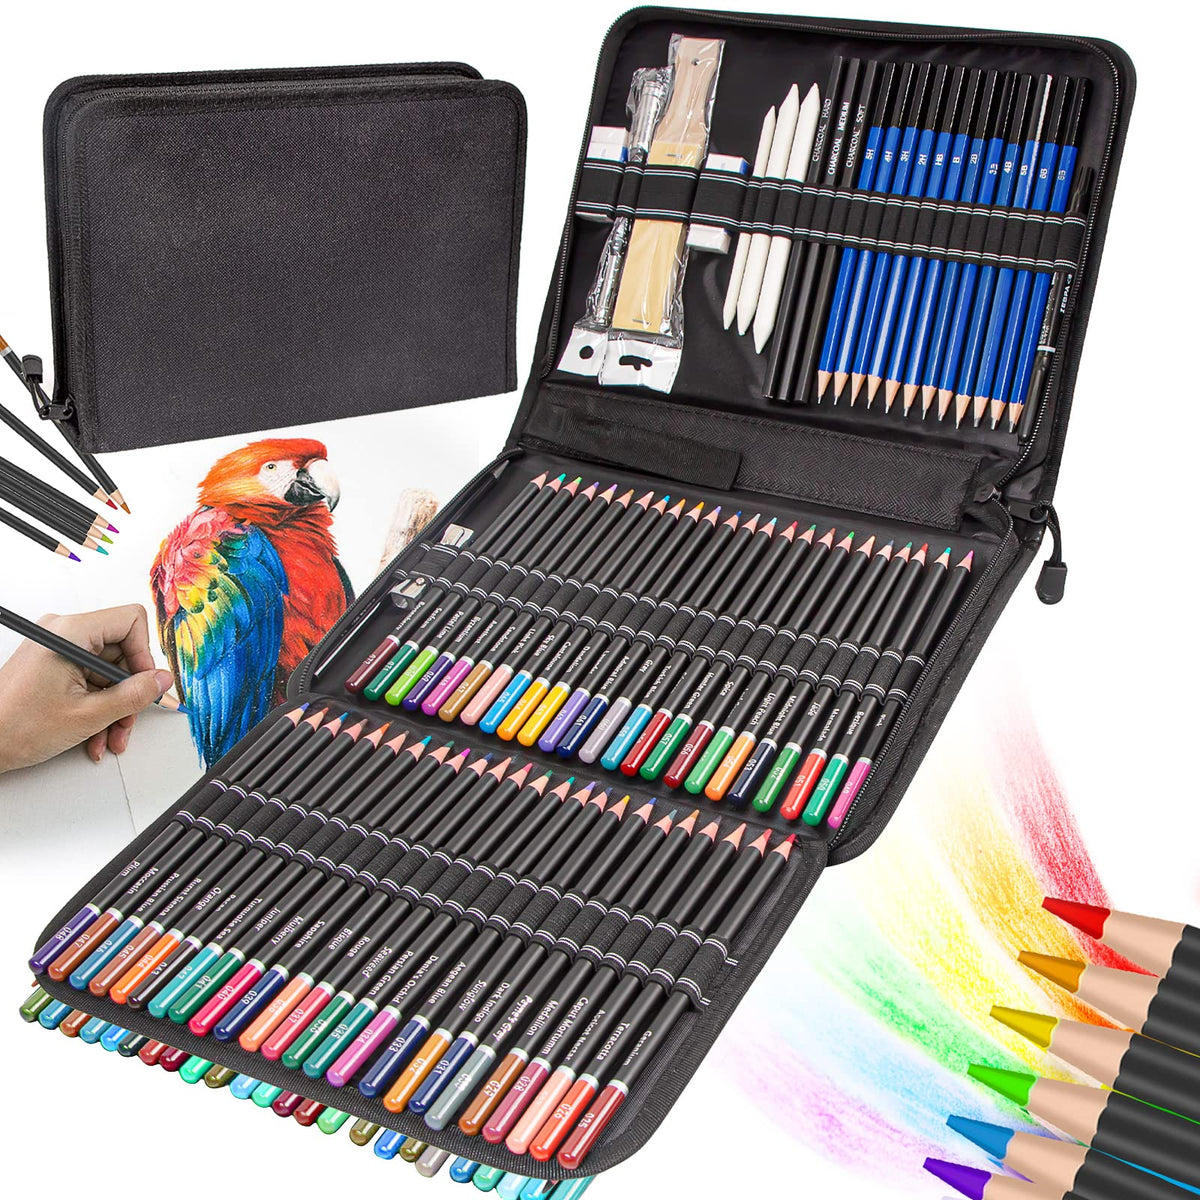 Vobou 96pcs Art Supplies Set, Colored Drawing Pencils Art Kit